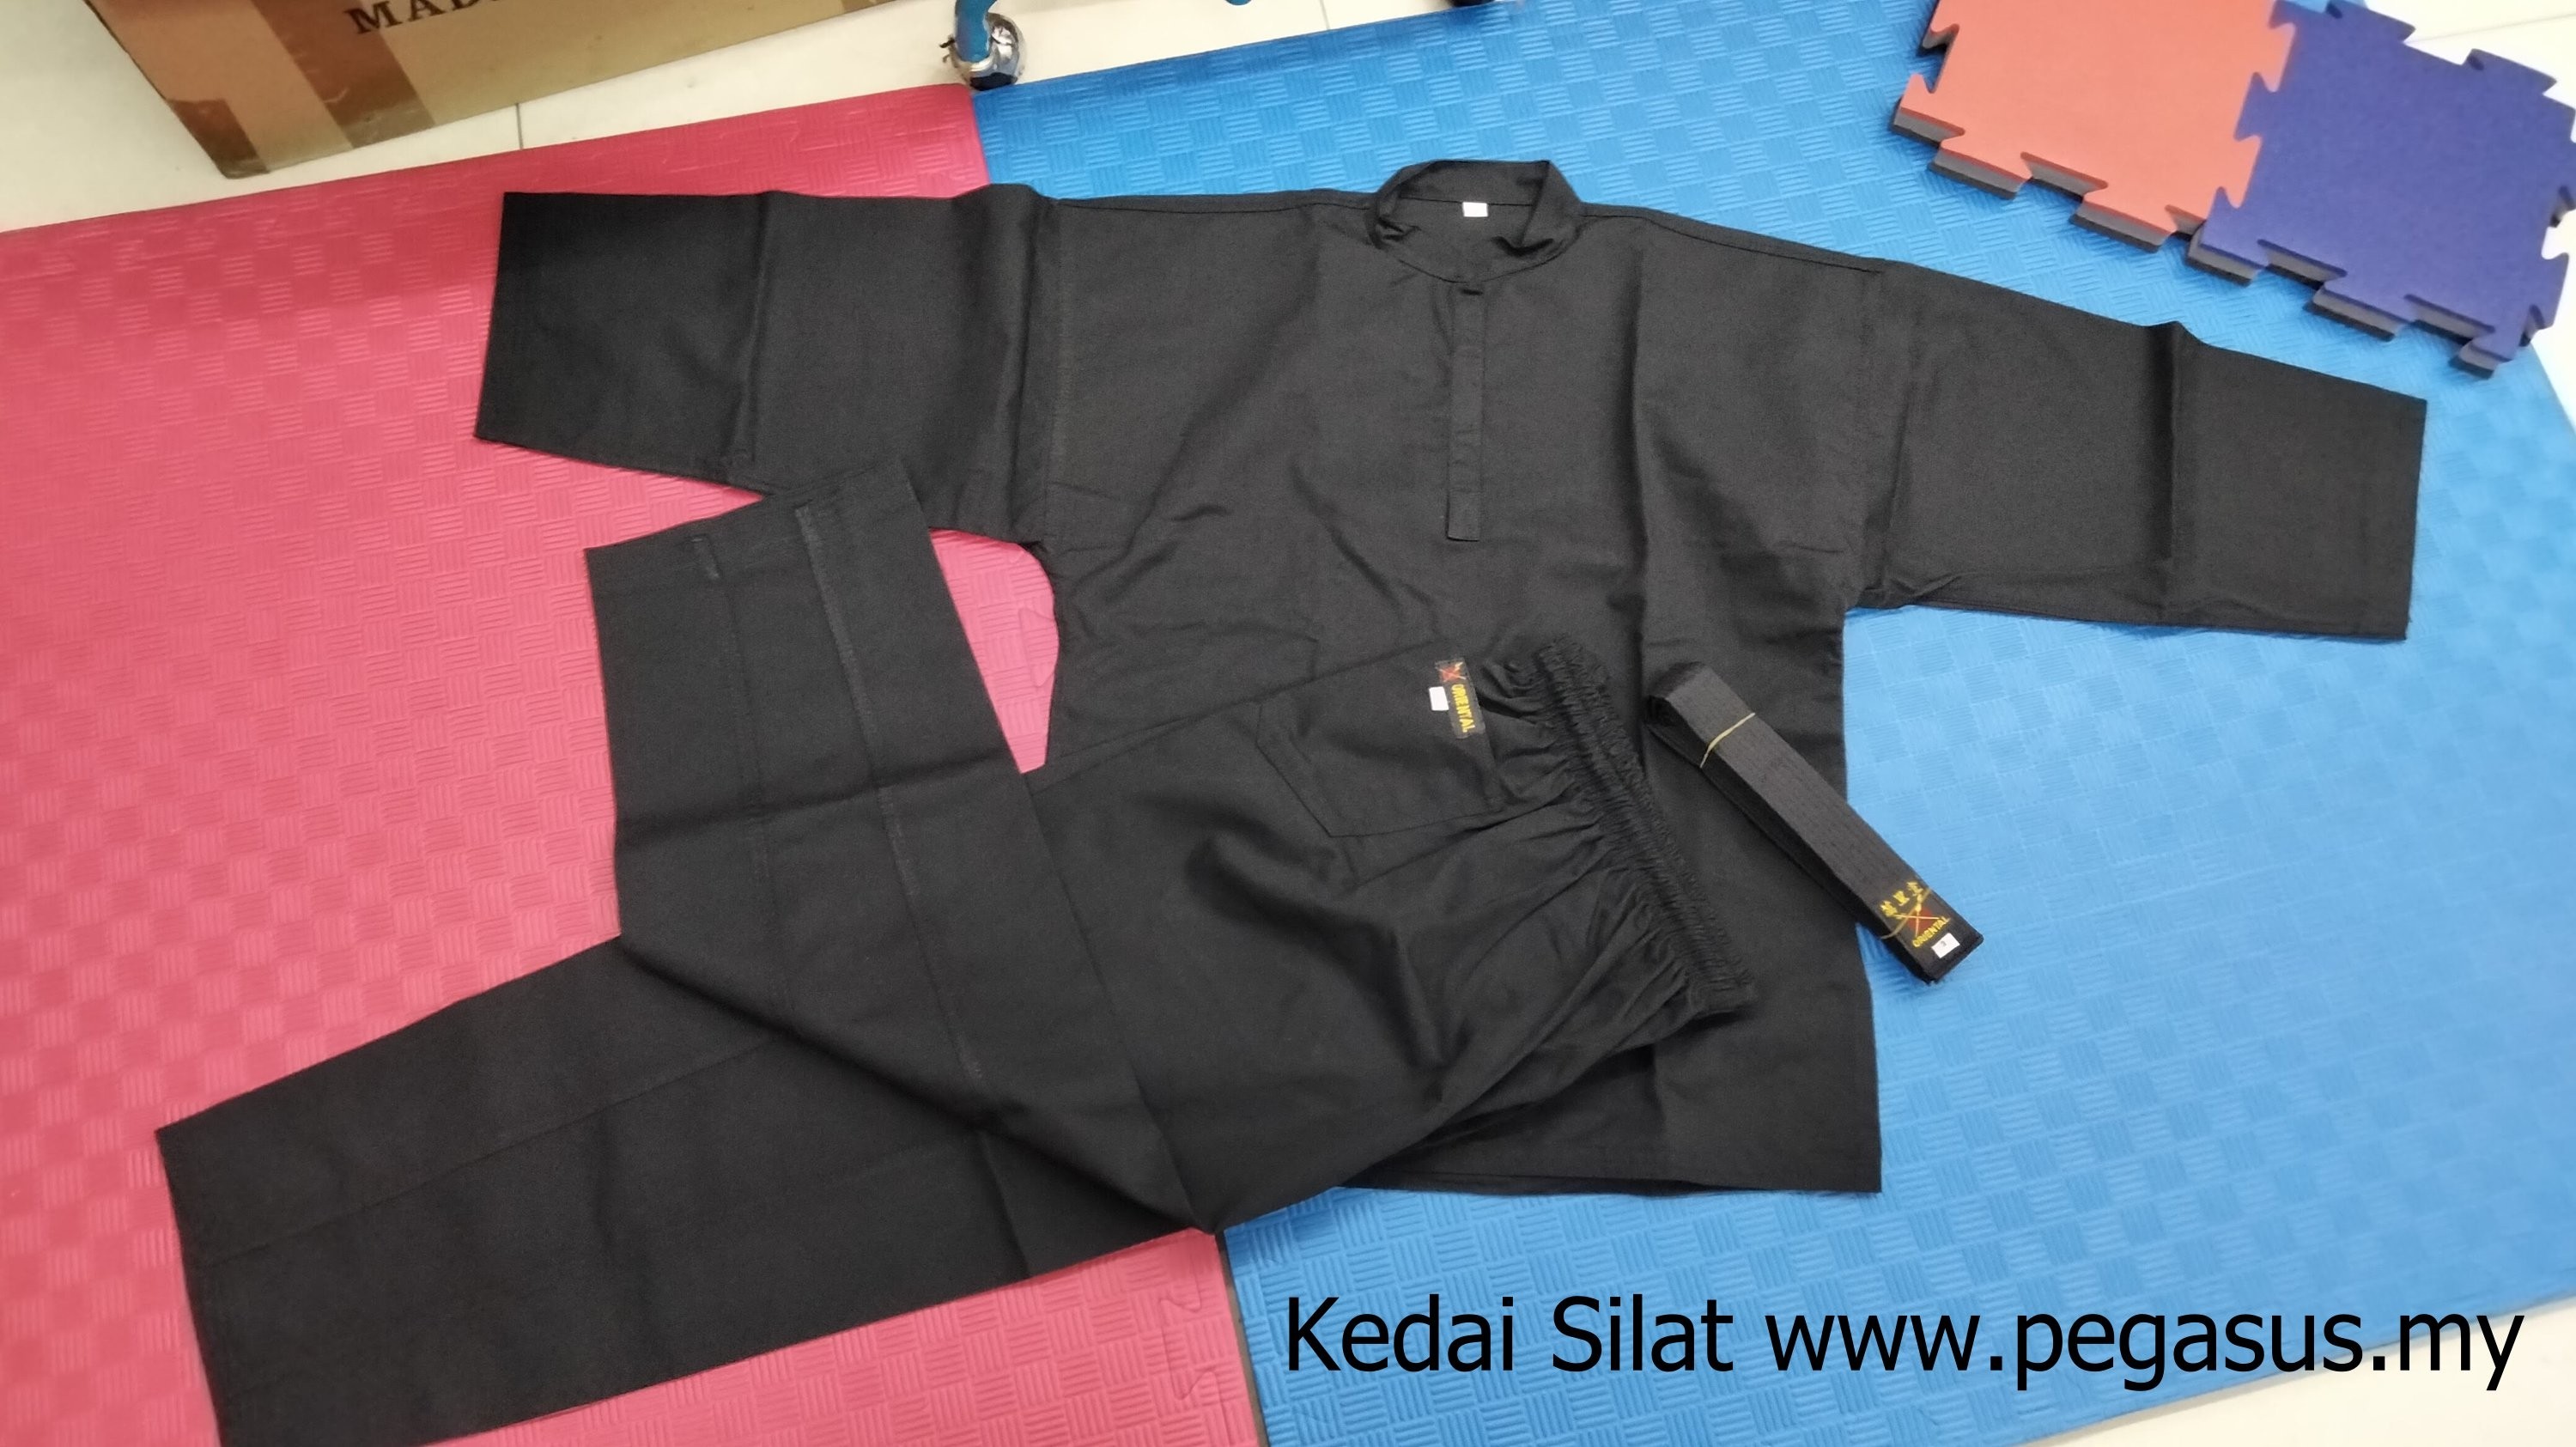 ORIENTAL Silat uniform, Baju Silat, Pakaian Pencak Silat